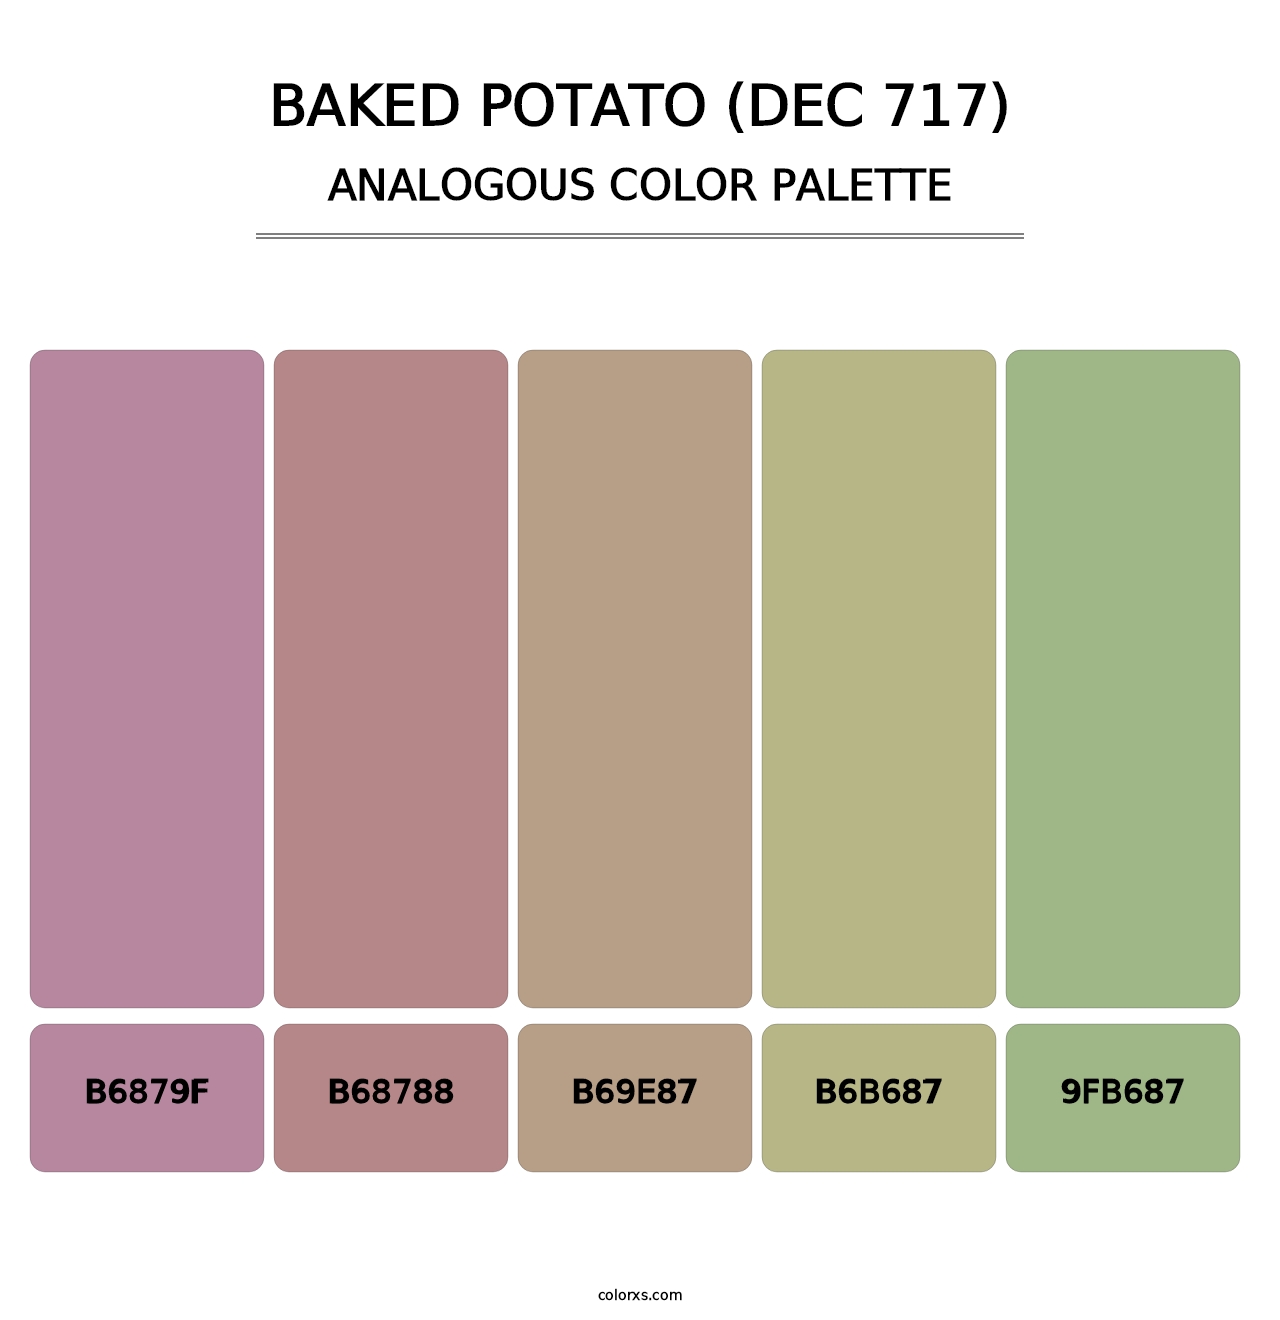 Baked Potato (DEC 717) - Analogous Color Palette